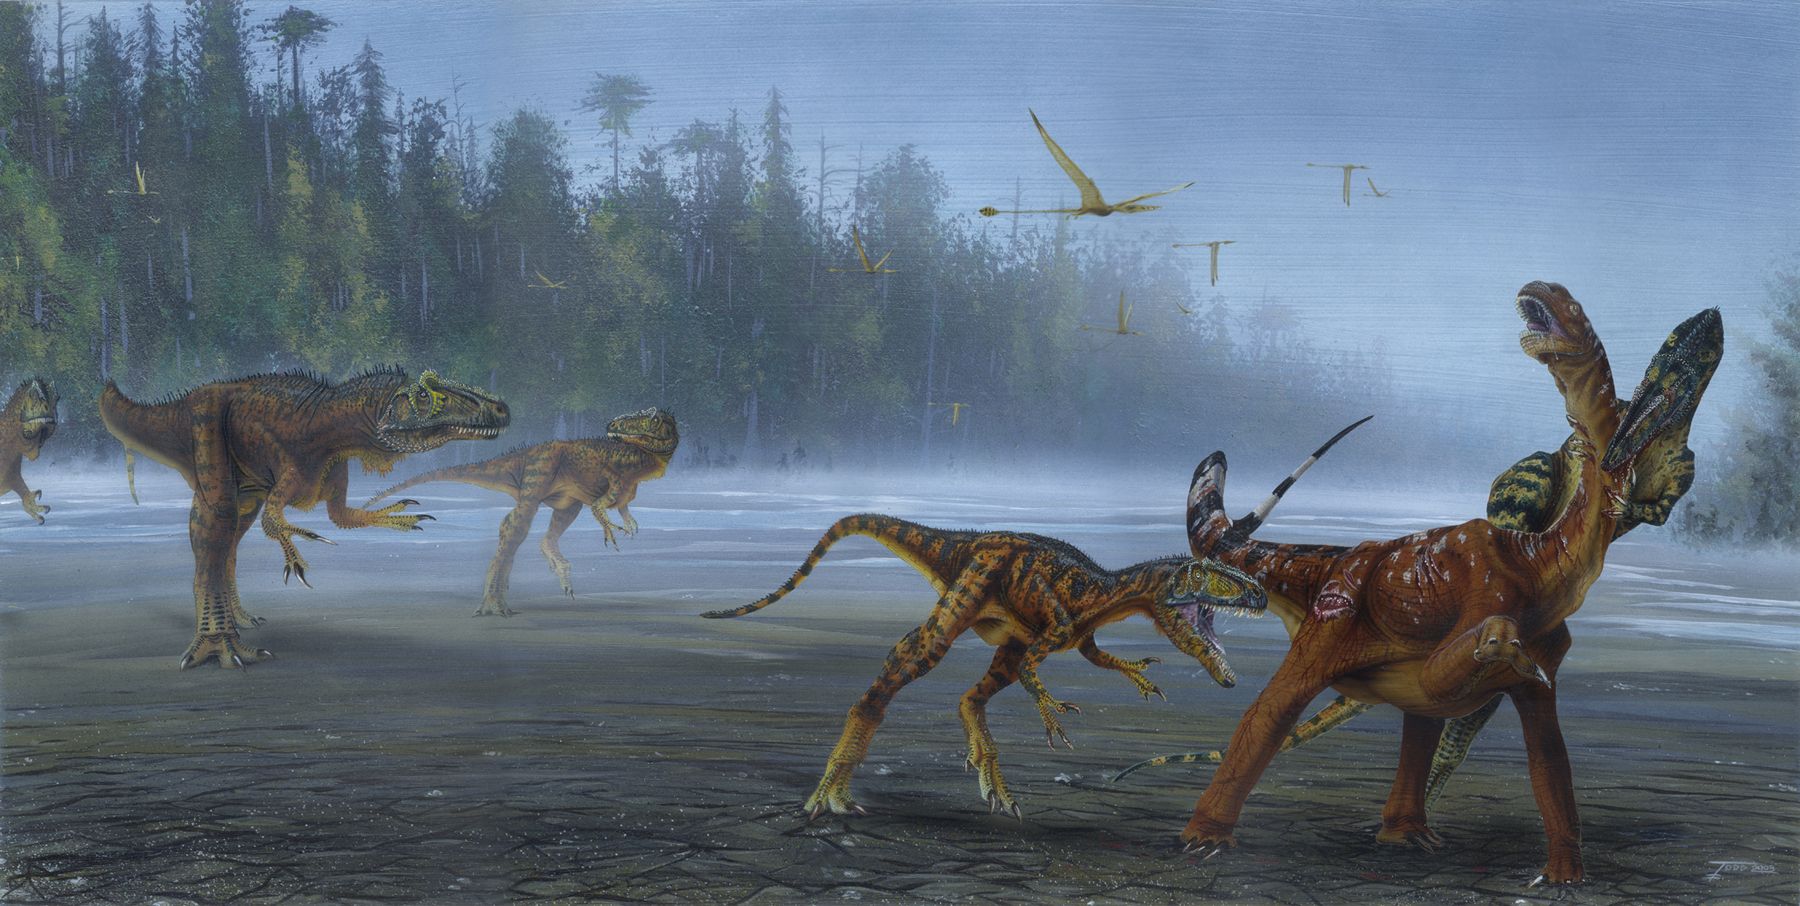 중생대 쥐라기 최강공룡 알로사우루스 새로운 종 발견